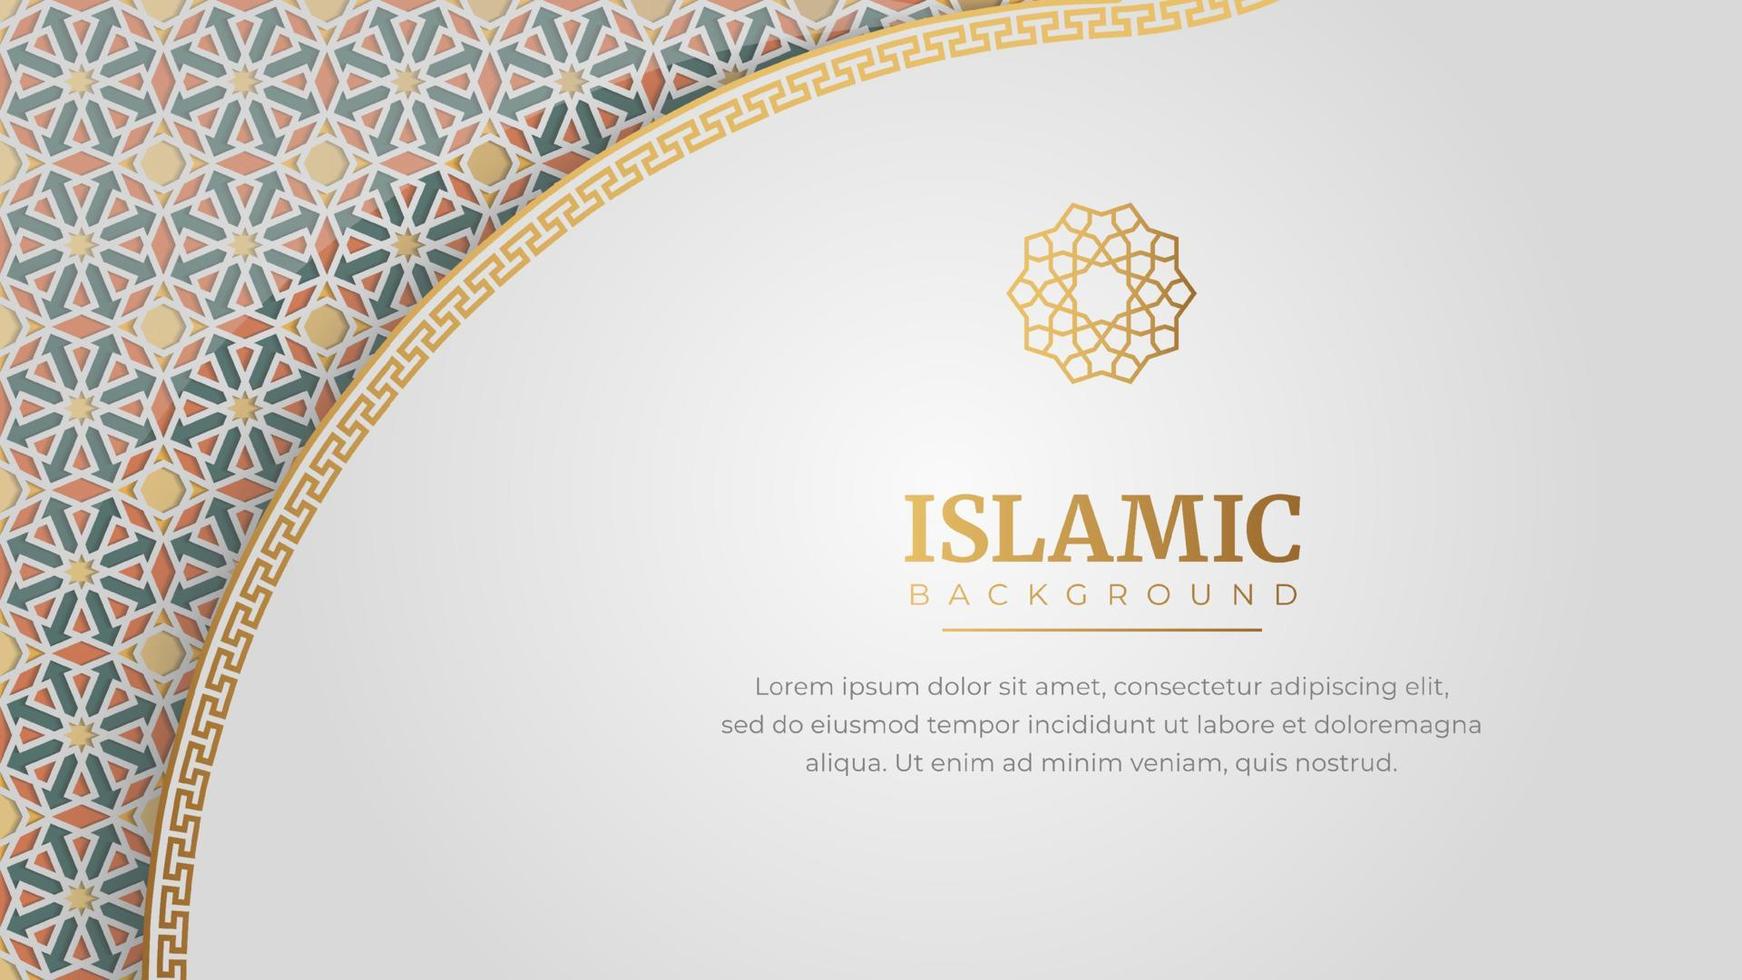 árabe islâmico elegante branco luxo quadro, Armação enfeite fundo vetor